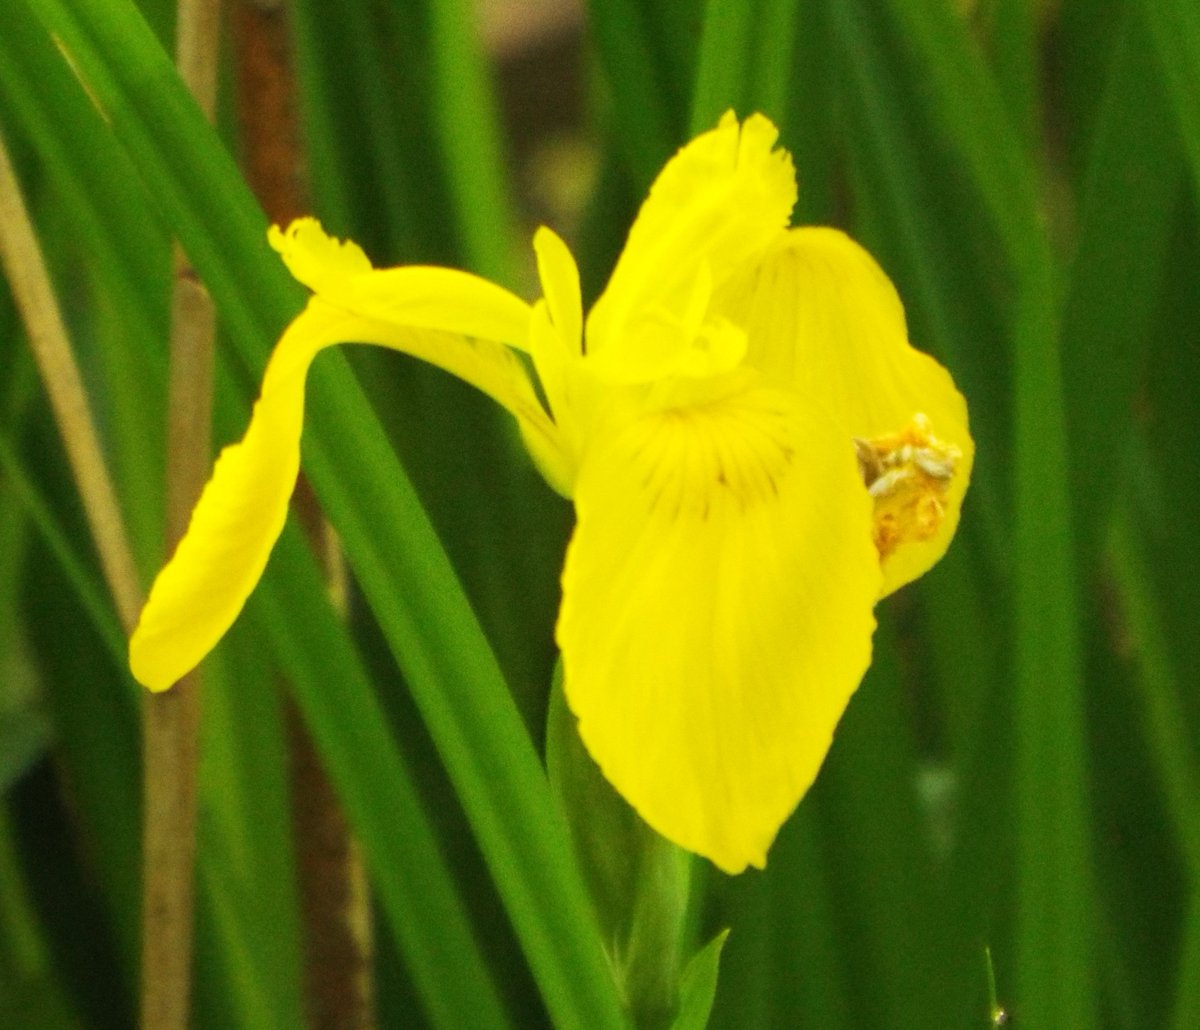 きょう5月3日の誕生花：アヤメ🌷
この花は、アヤメ科アヤメ属の多年草。
別名：オランダアヤメ 
原産地：日本を含む東北アジア 
花言葉：優雅な心・嬉しい知らせ・よい便り・使者・神秘的な人 など